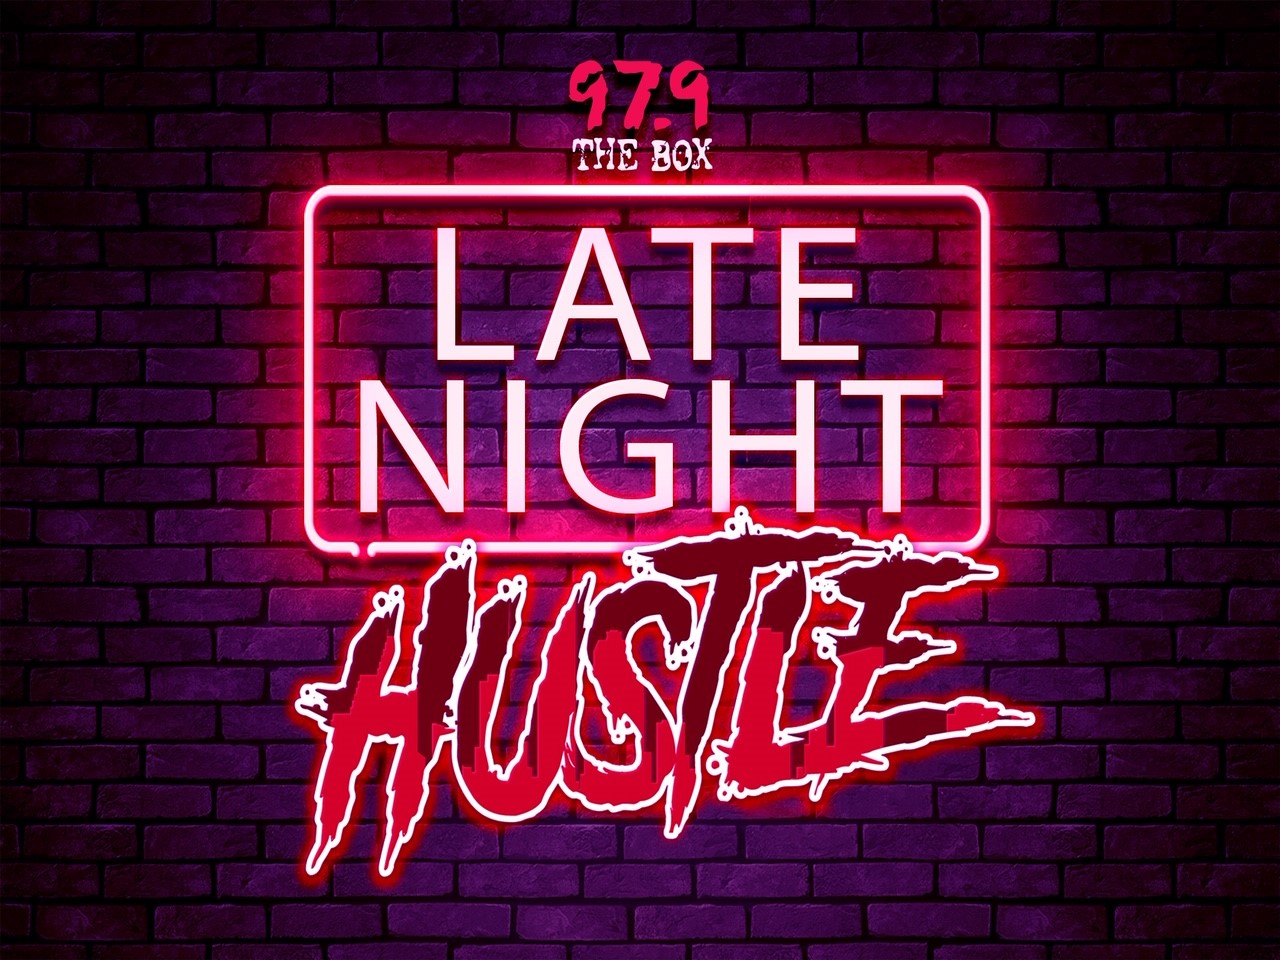 hustle town teen night club